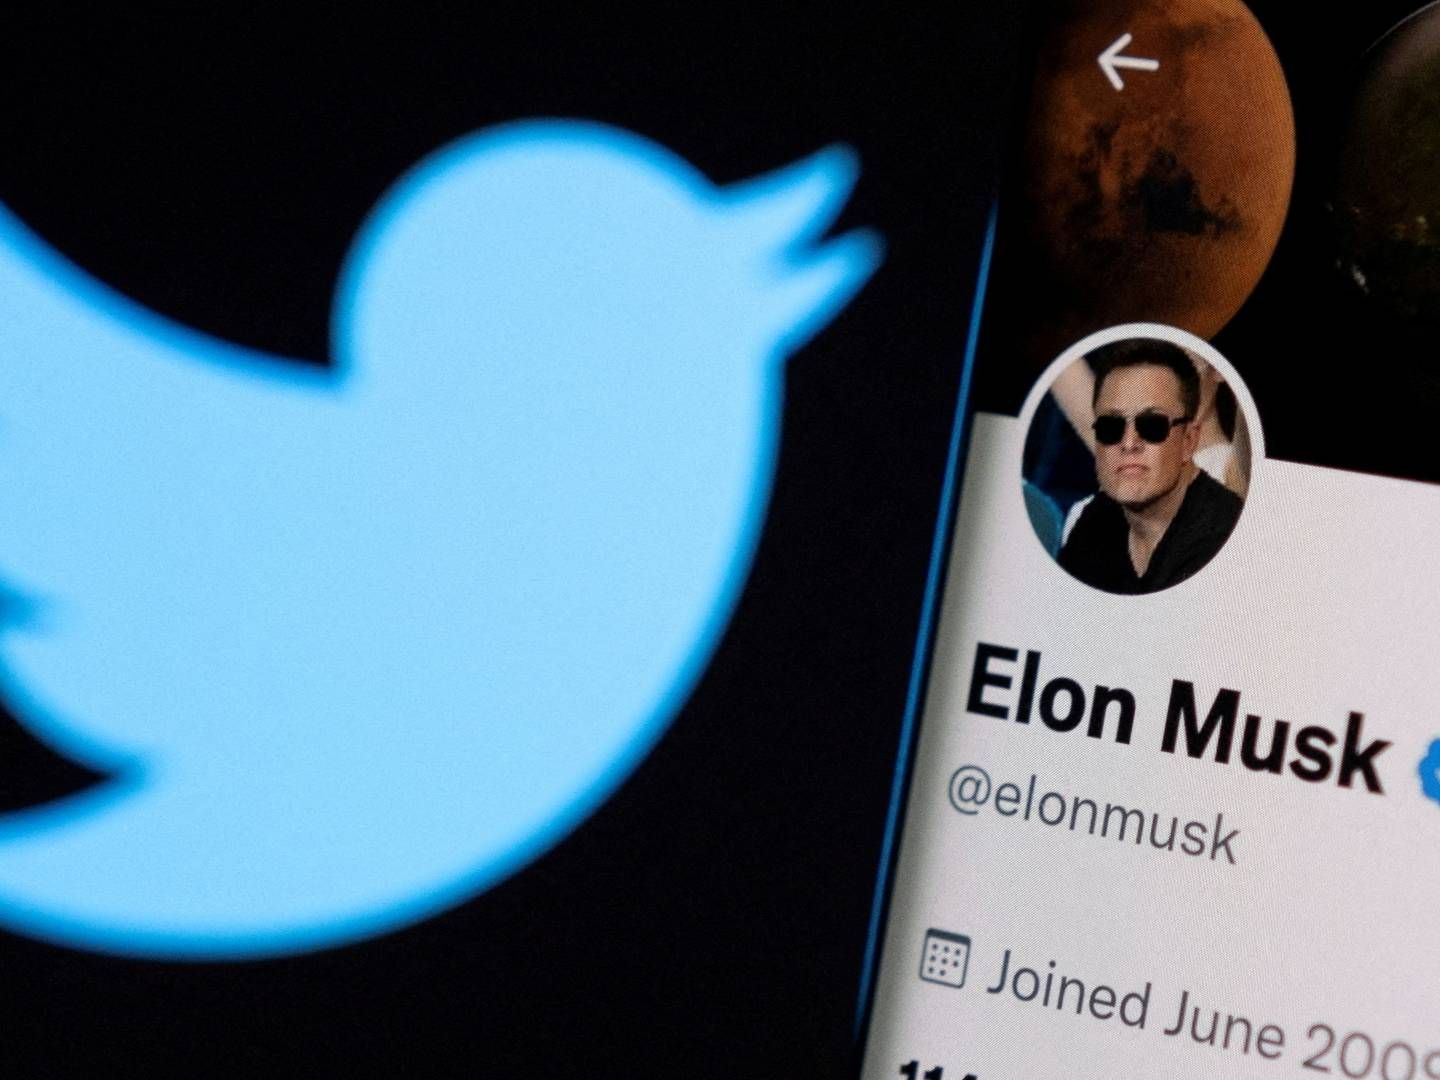 Det kan snart blive afgjort, om Elon Musk lykkes med at købe Twitter. | Foto: Dado Ruvic/REUTERS / X02714